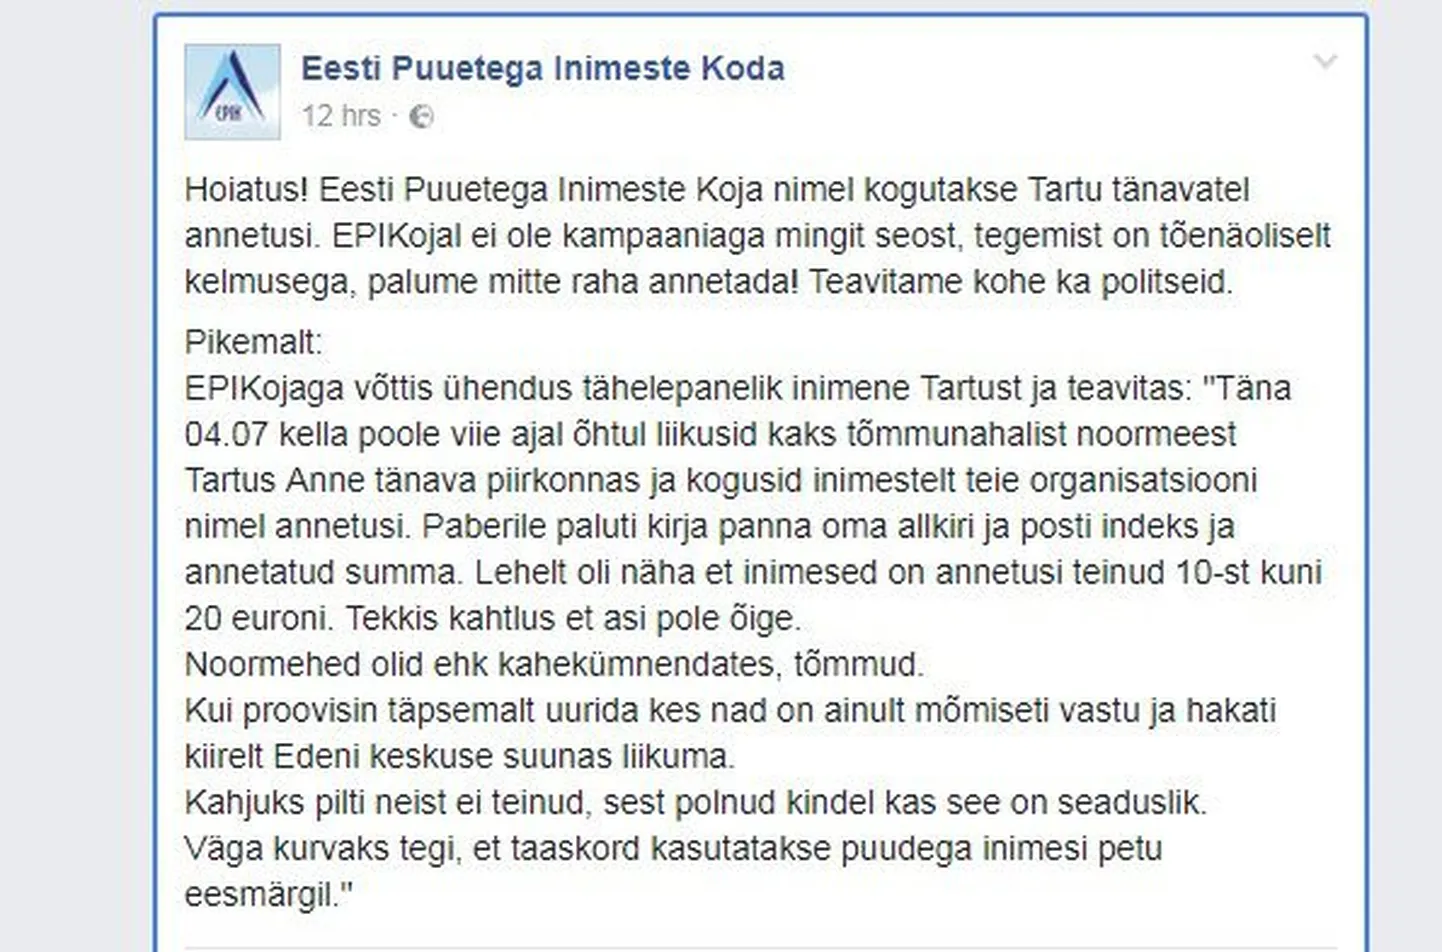 Eesti Puuetega Inimeste Koda hoiatab inimesi.